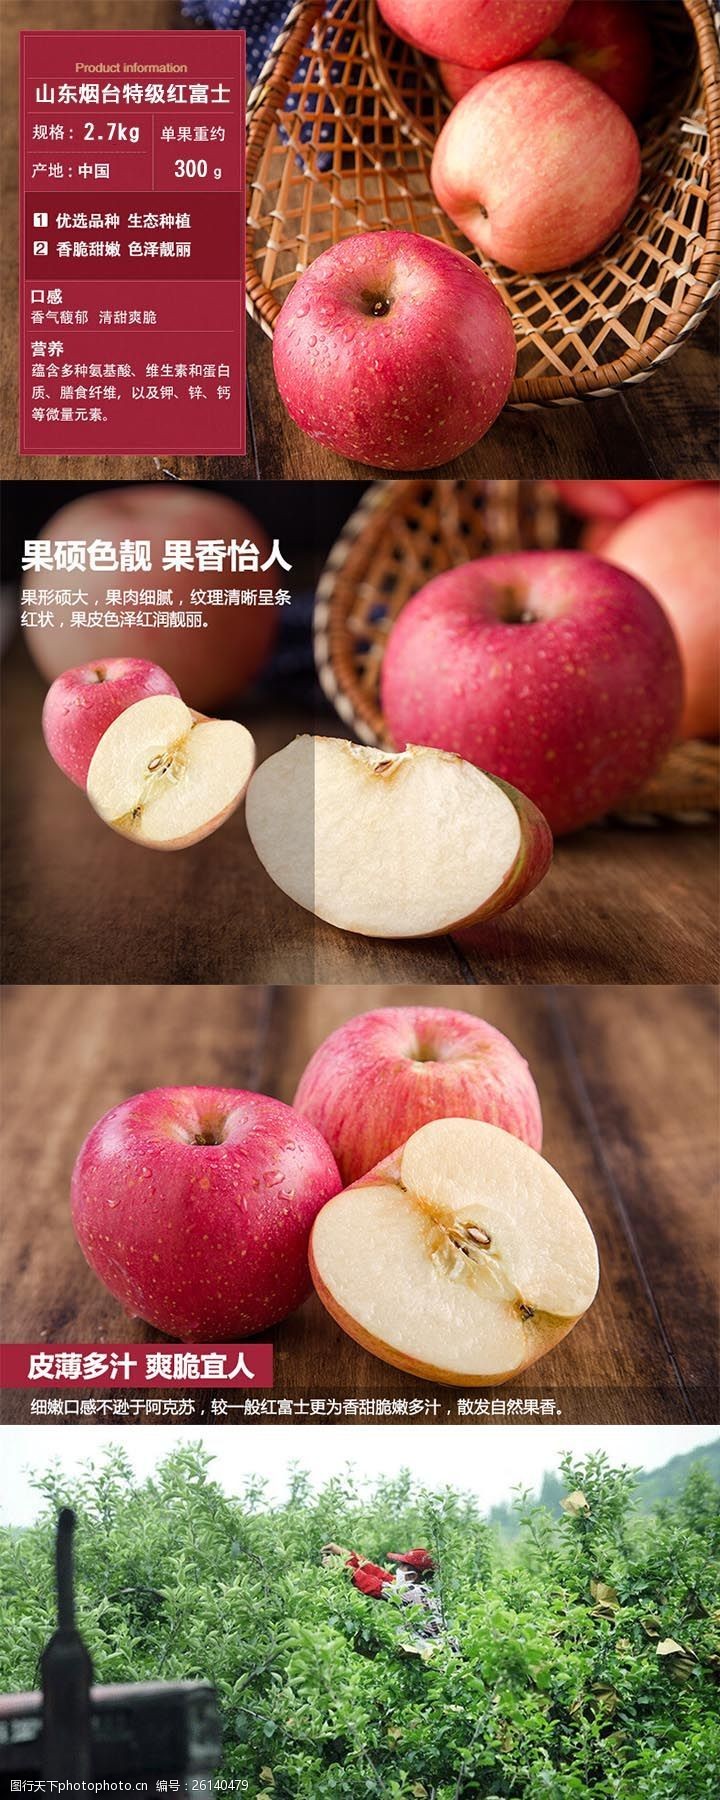 红苹果山东烟台红富士苹果详情页